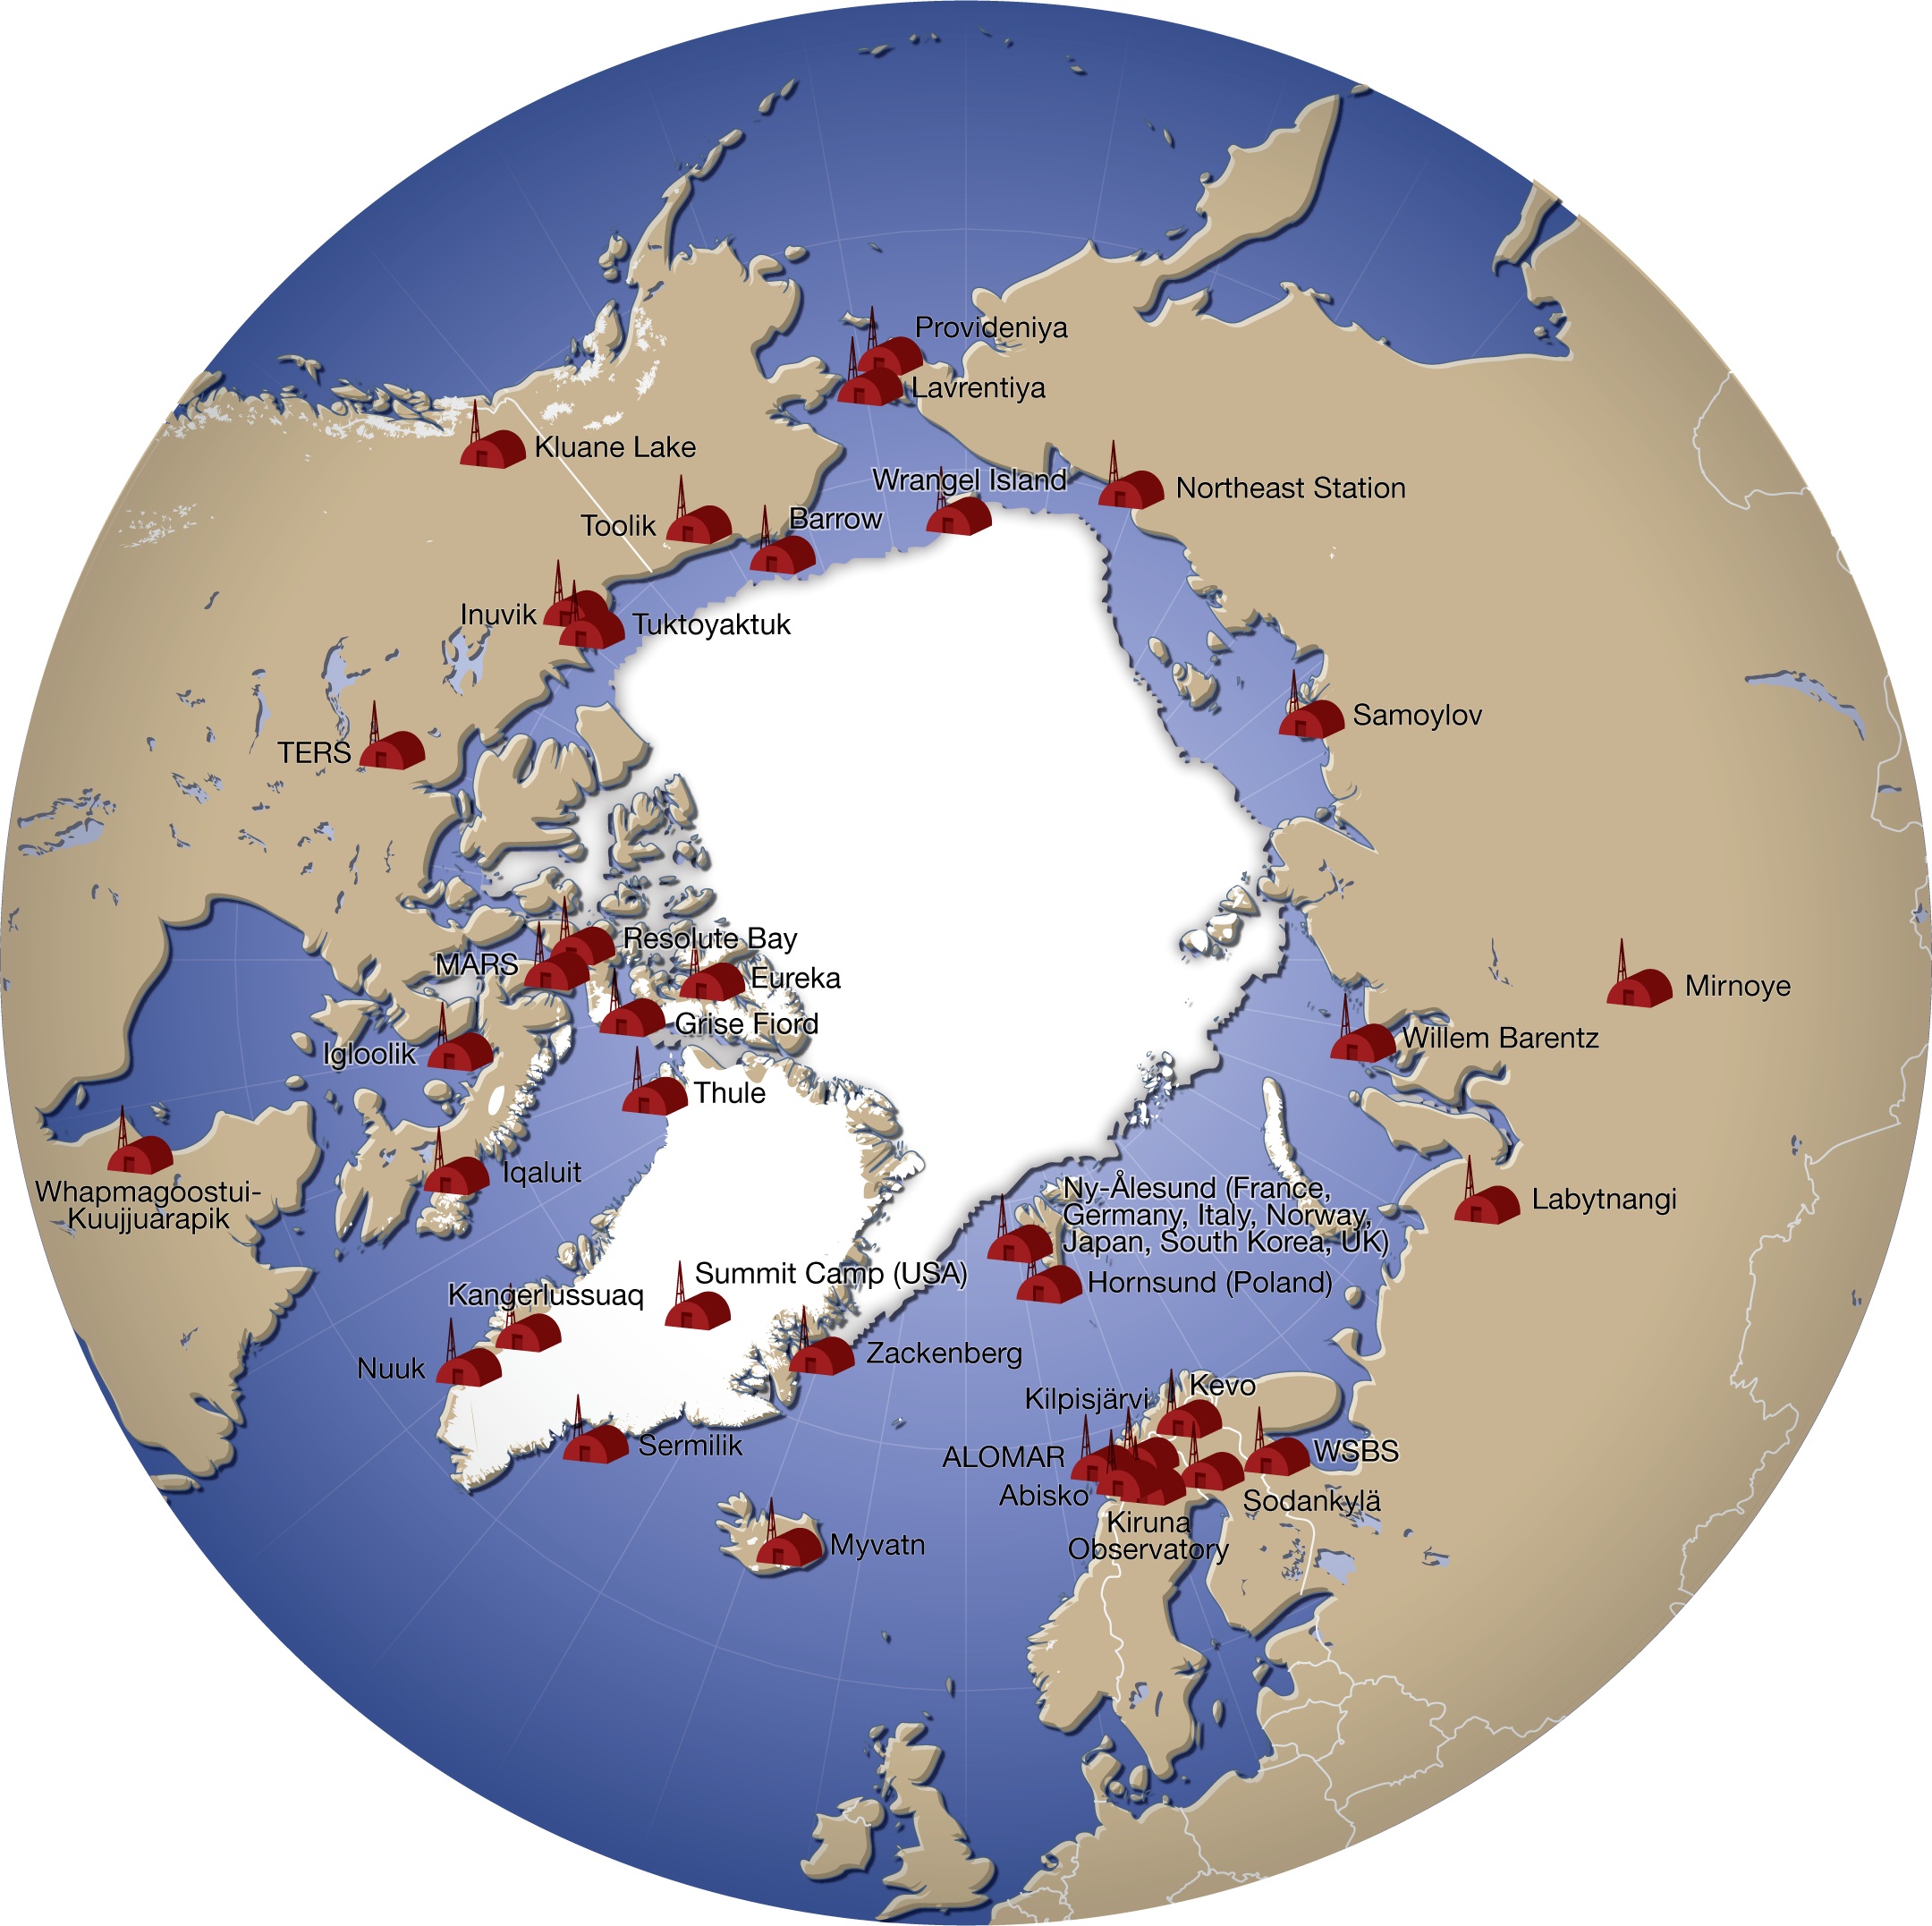 south pole station map